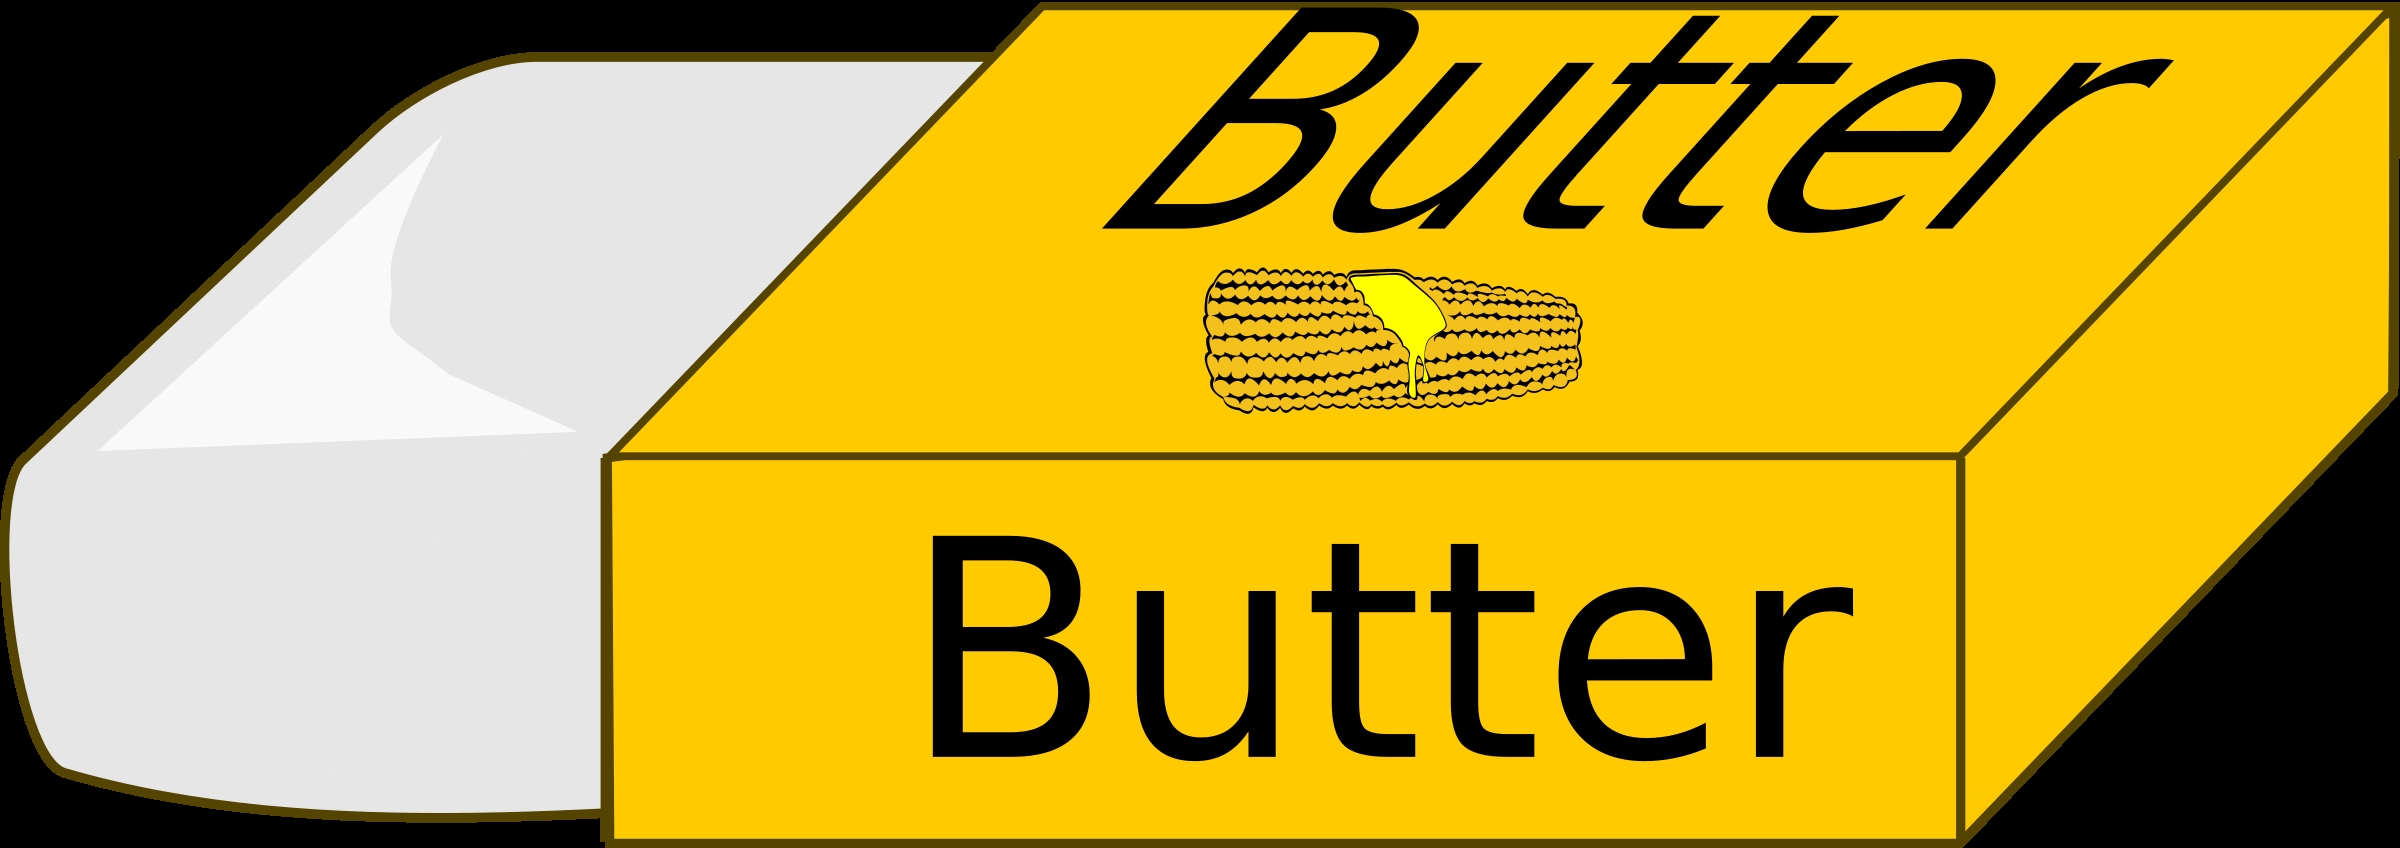 butter clipart clip art